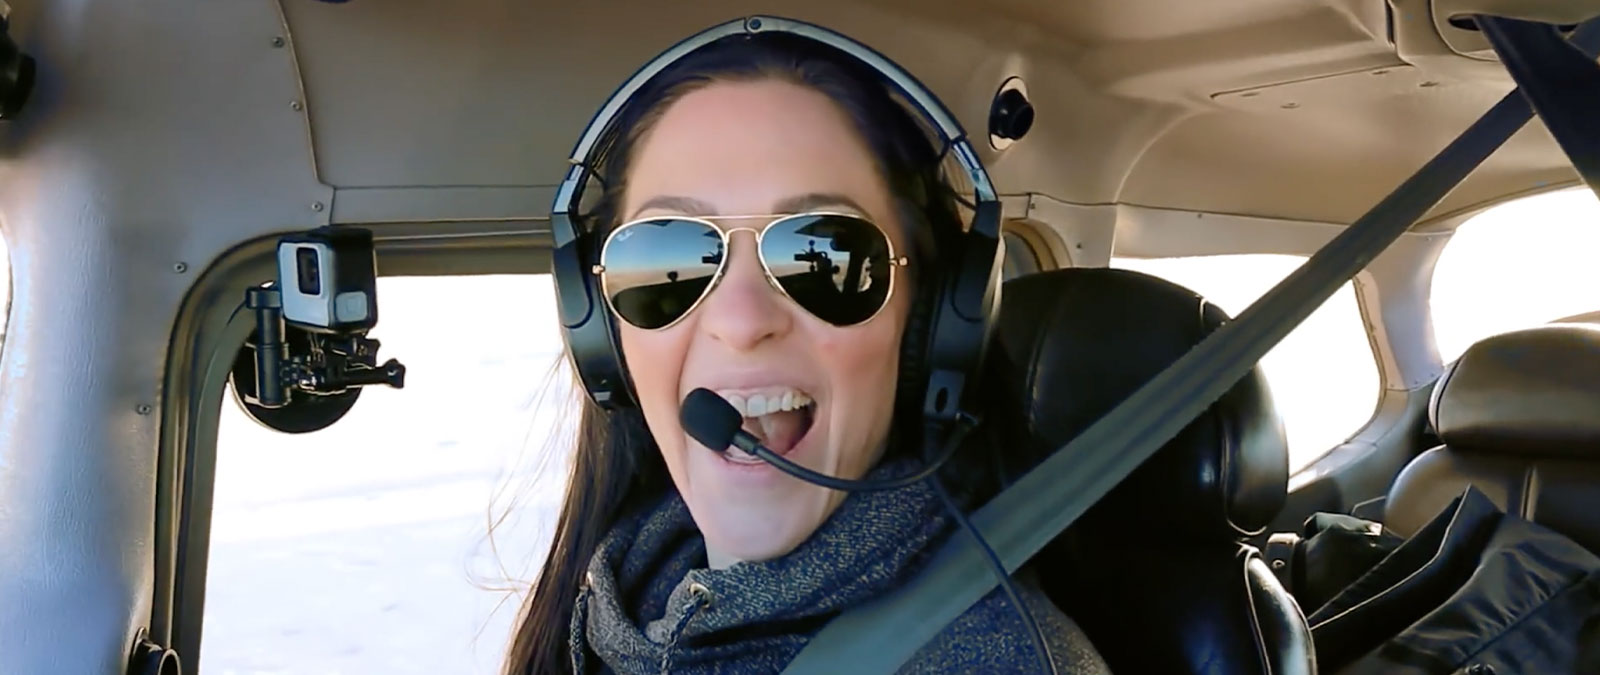 Pilot Emilie fliegt ein Flugzeug mit einem Headset und einer Sonnenbrille